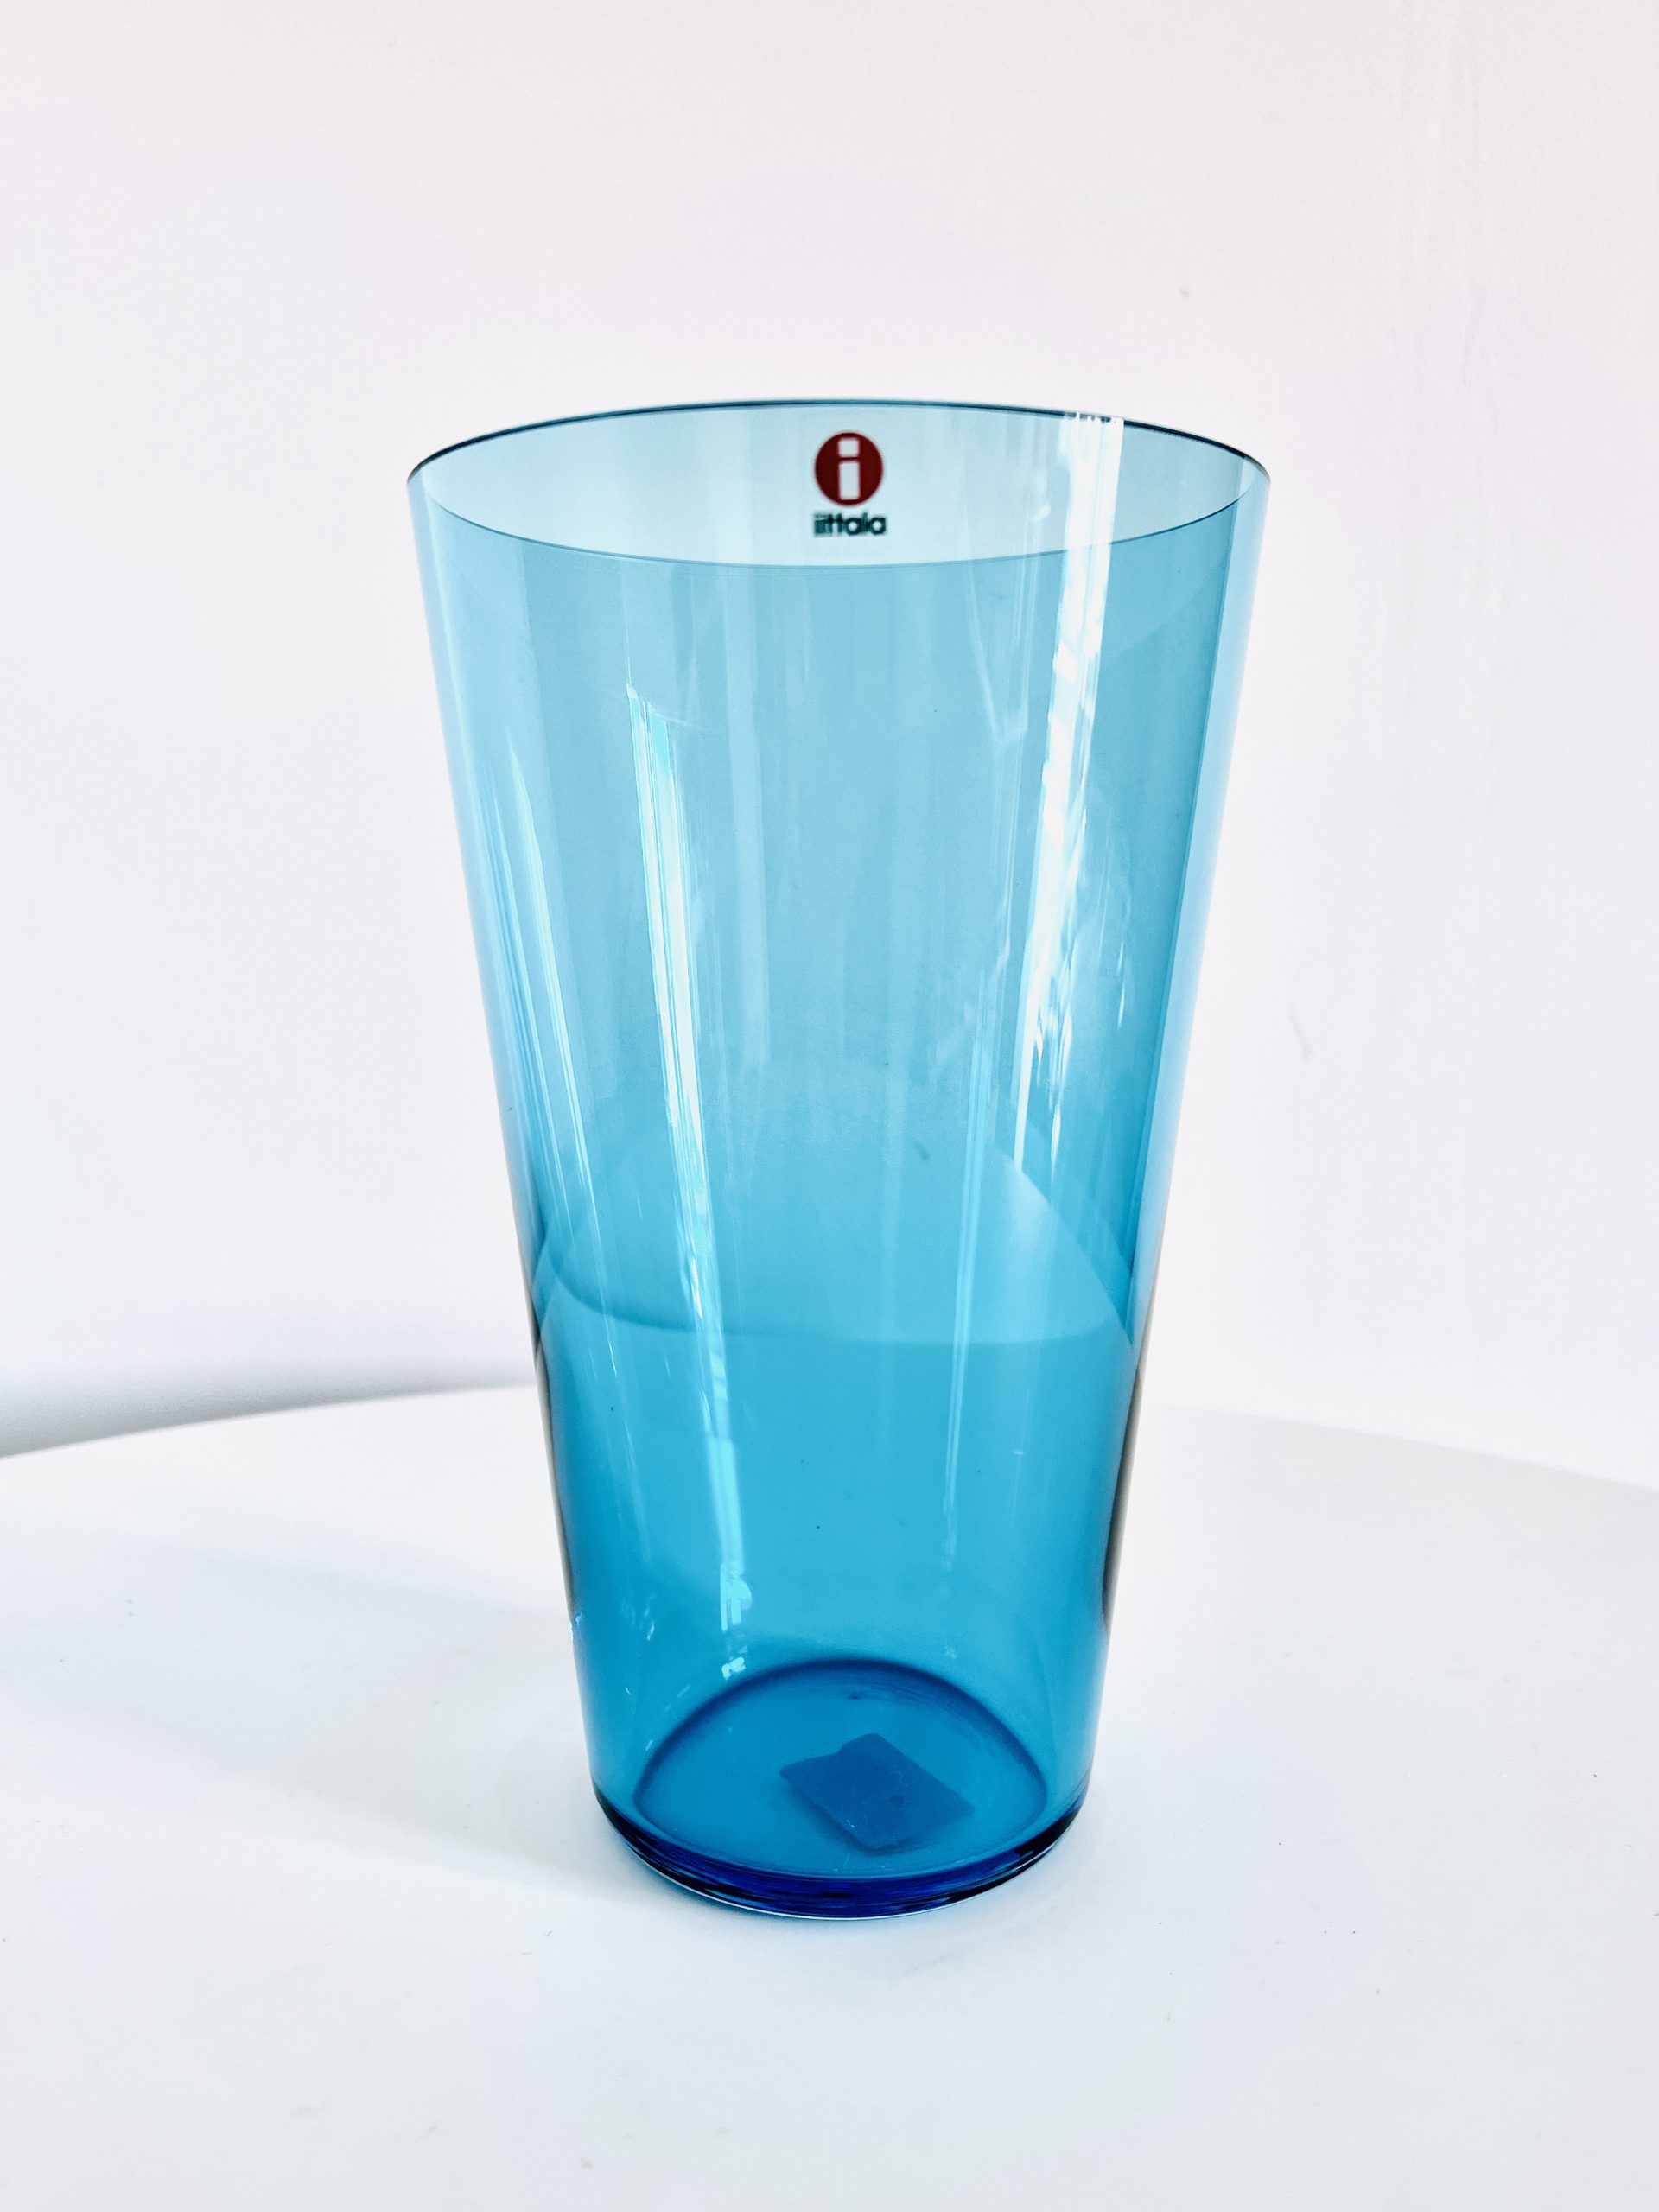 Afbeelding van de Iittala Kartio vaas blauw die in deze advertentie wordt aangeboden.